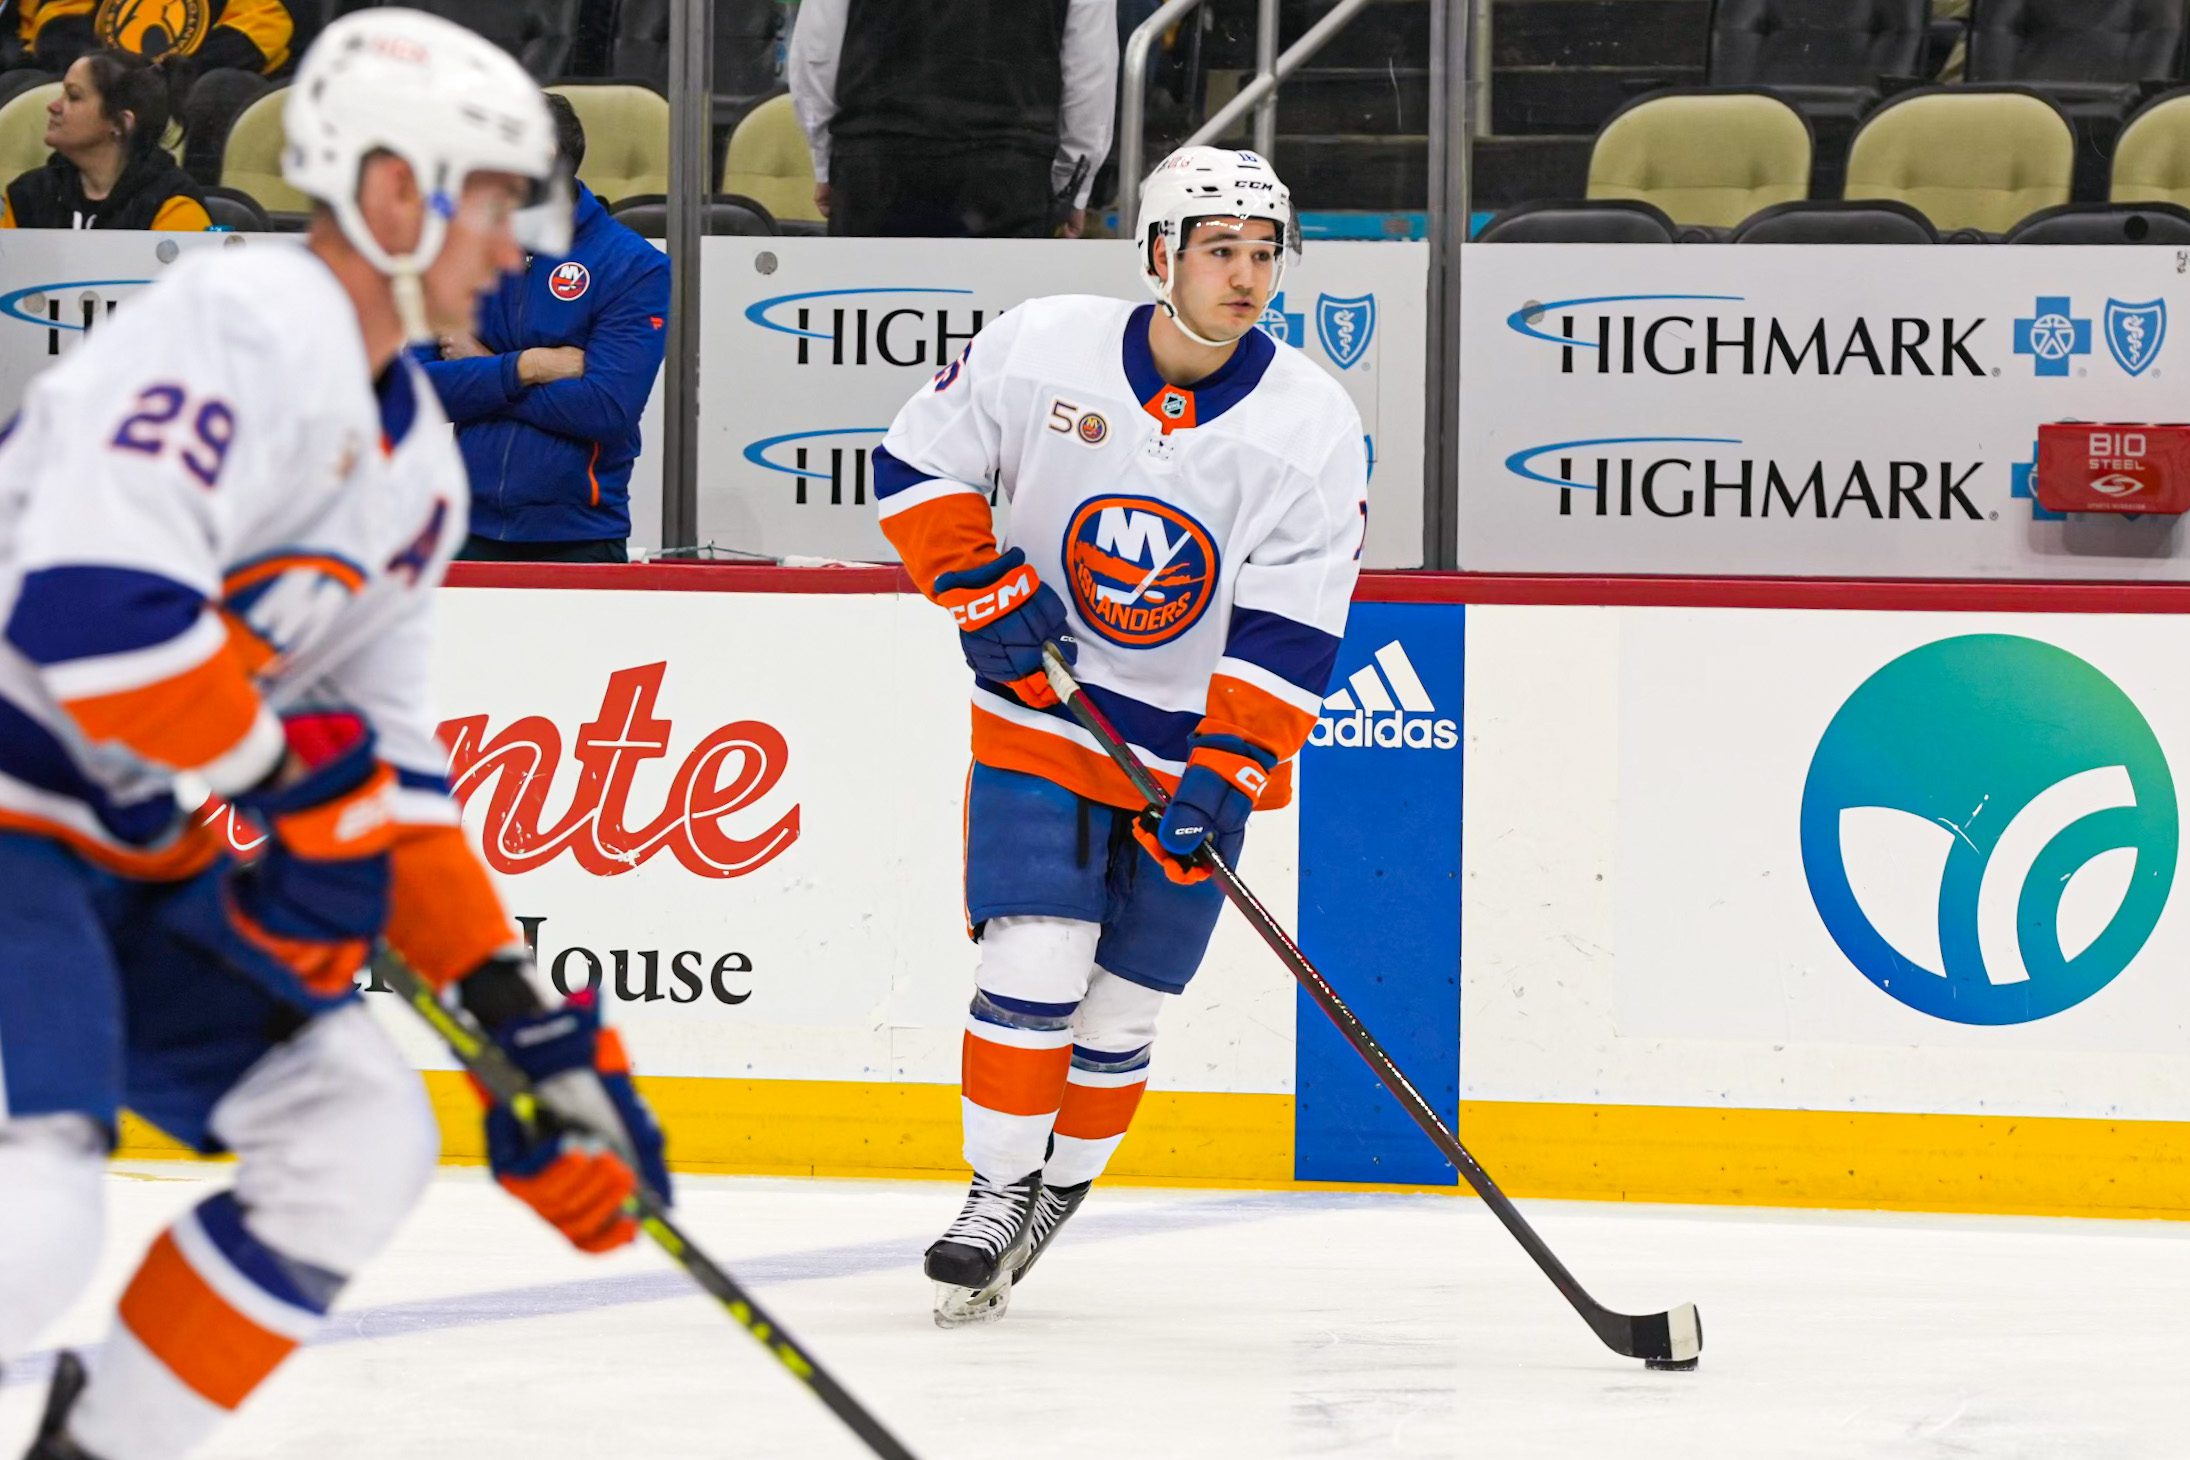 New York Islanders forward Arnaud Dureandeau during NHL Debut (Photo courtesy of New York Islanders Twitter)